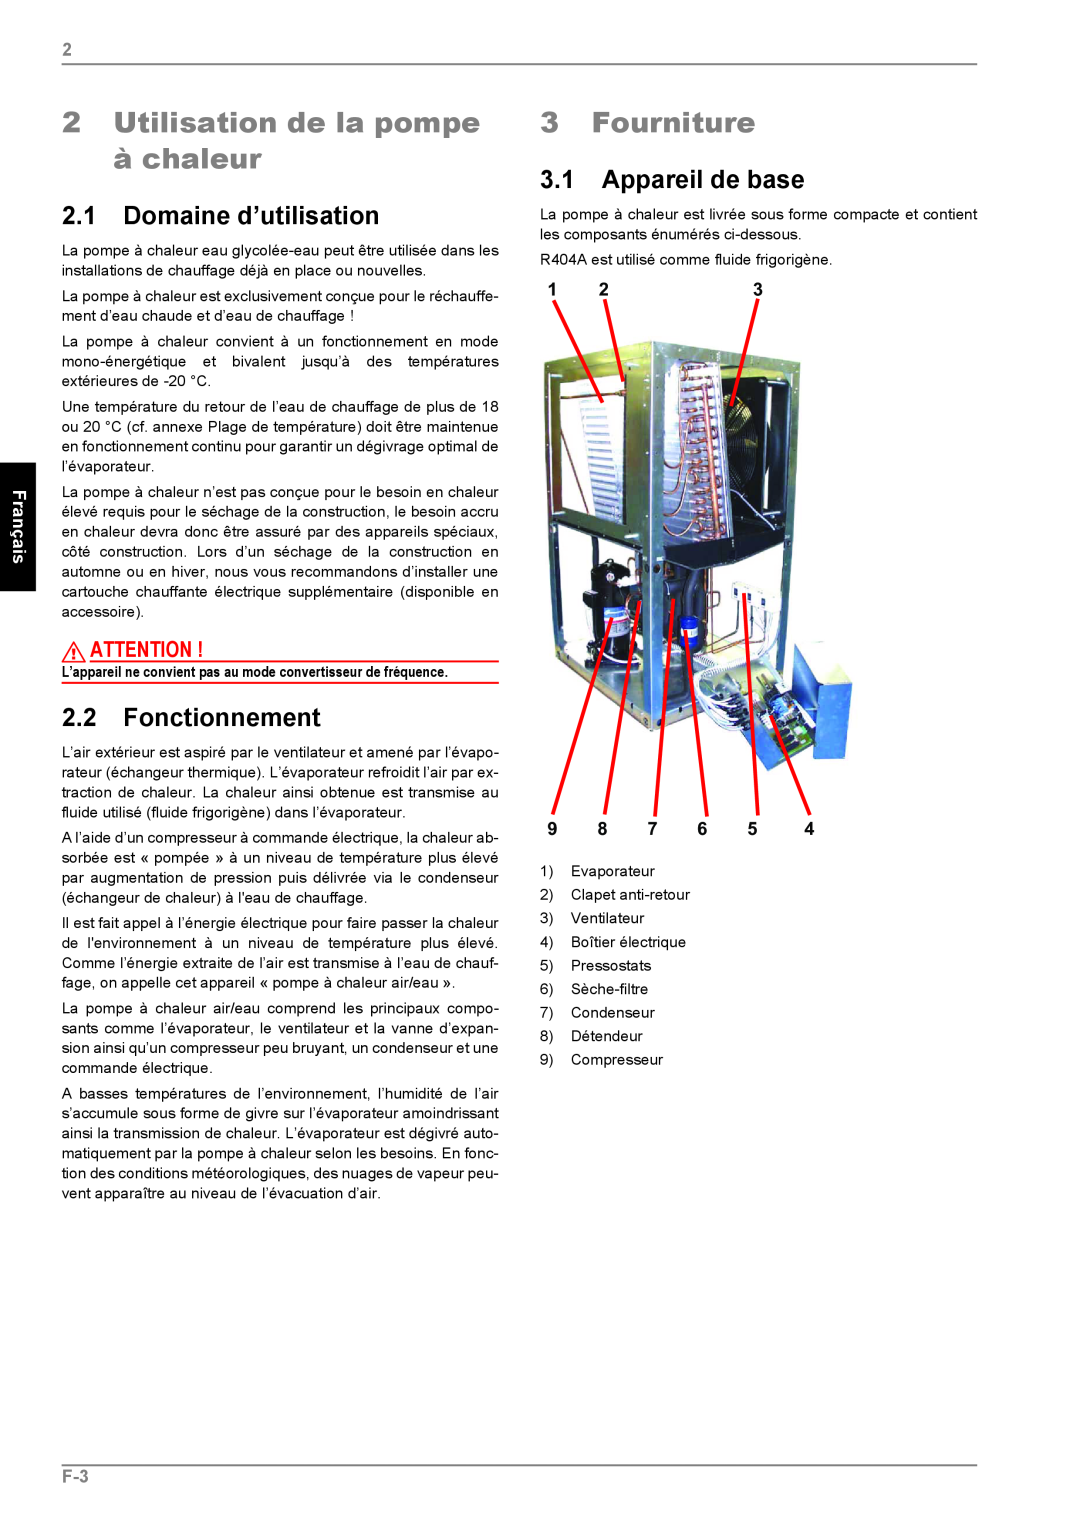 Dimplex LI 11MS 2Utilisation de la pompe à chaleur, Fourniture, 2.1Domaine d’utilisation, 2.2Fonctionnement, Français 